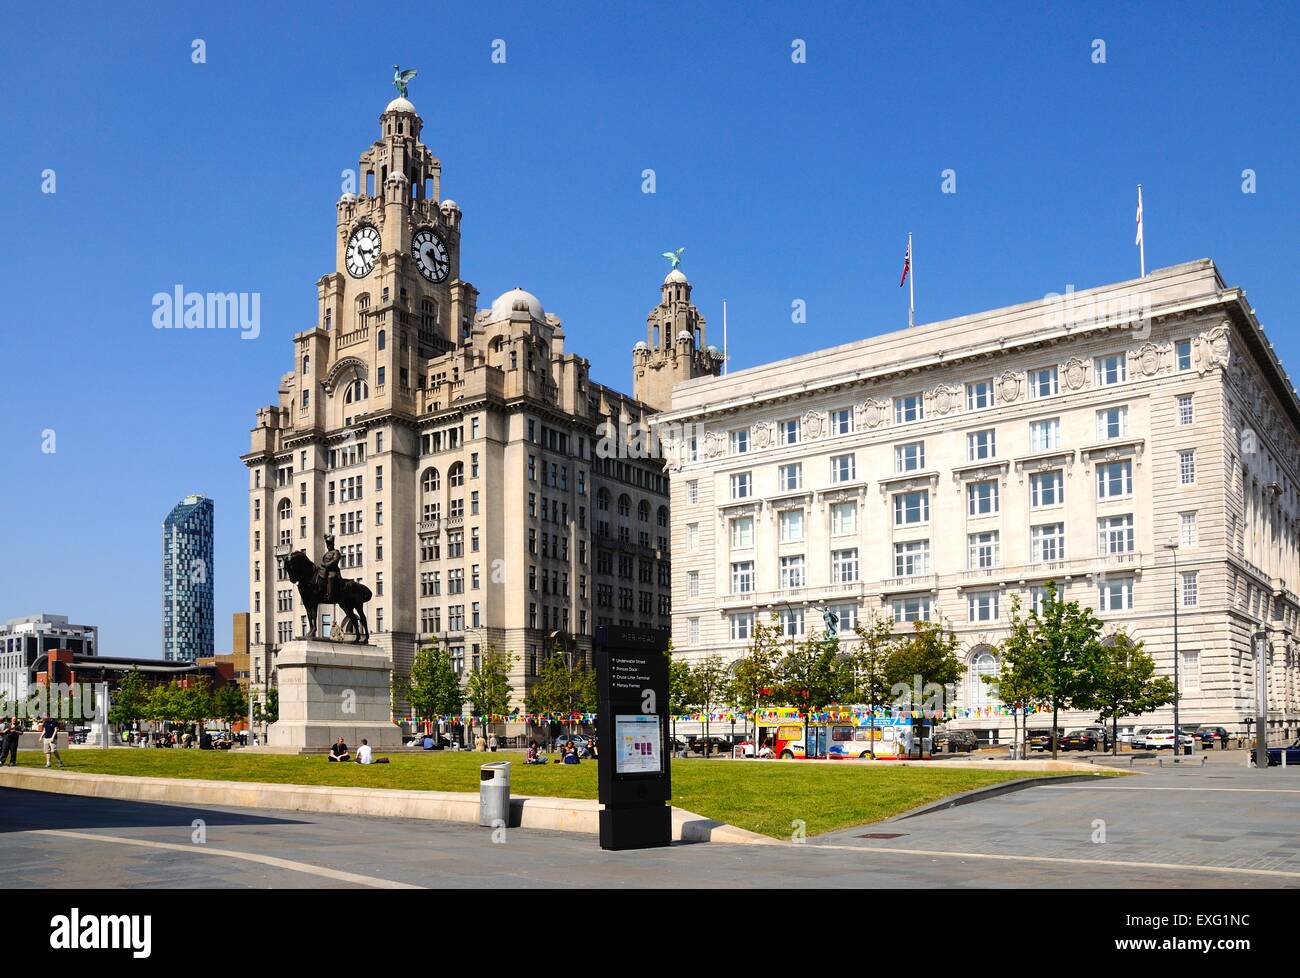 Deux des trois Grâces composé du Liver Building et la Cunard Building, Liverpool, Merseyside, England, UK, Europe. Banque D'Images